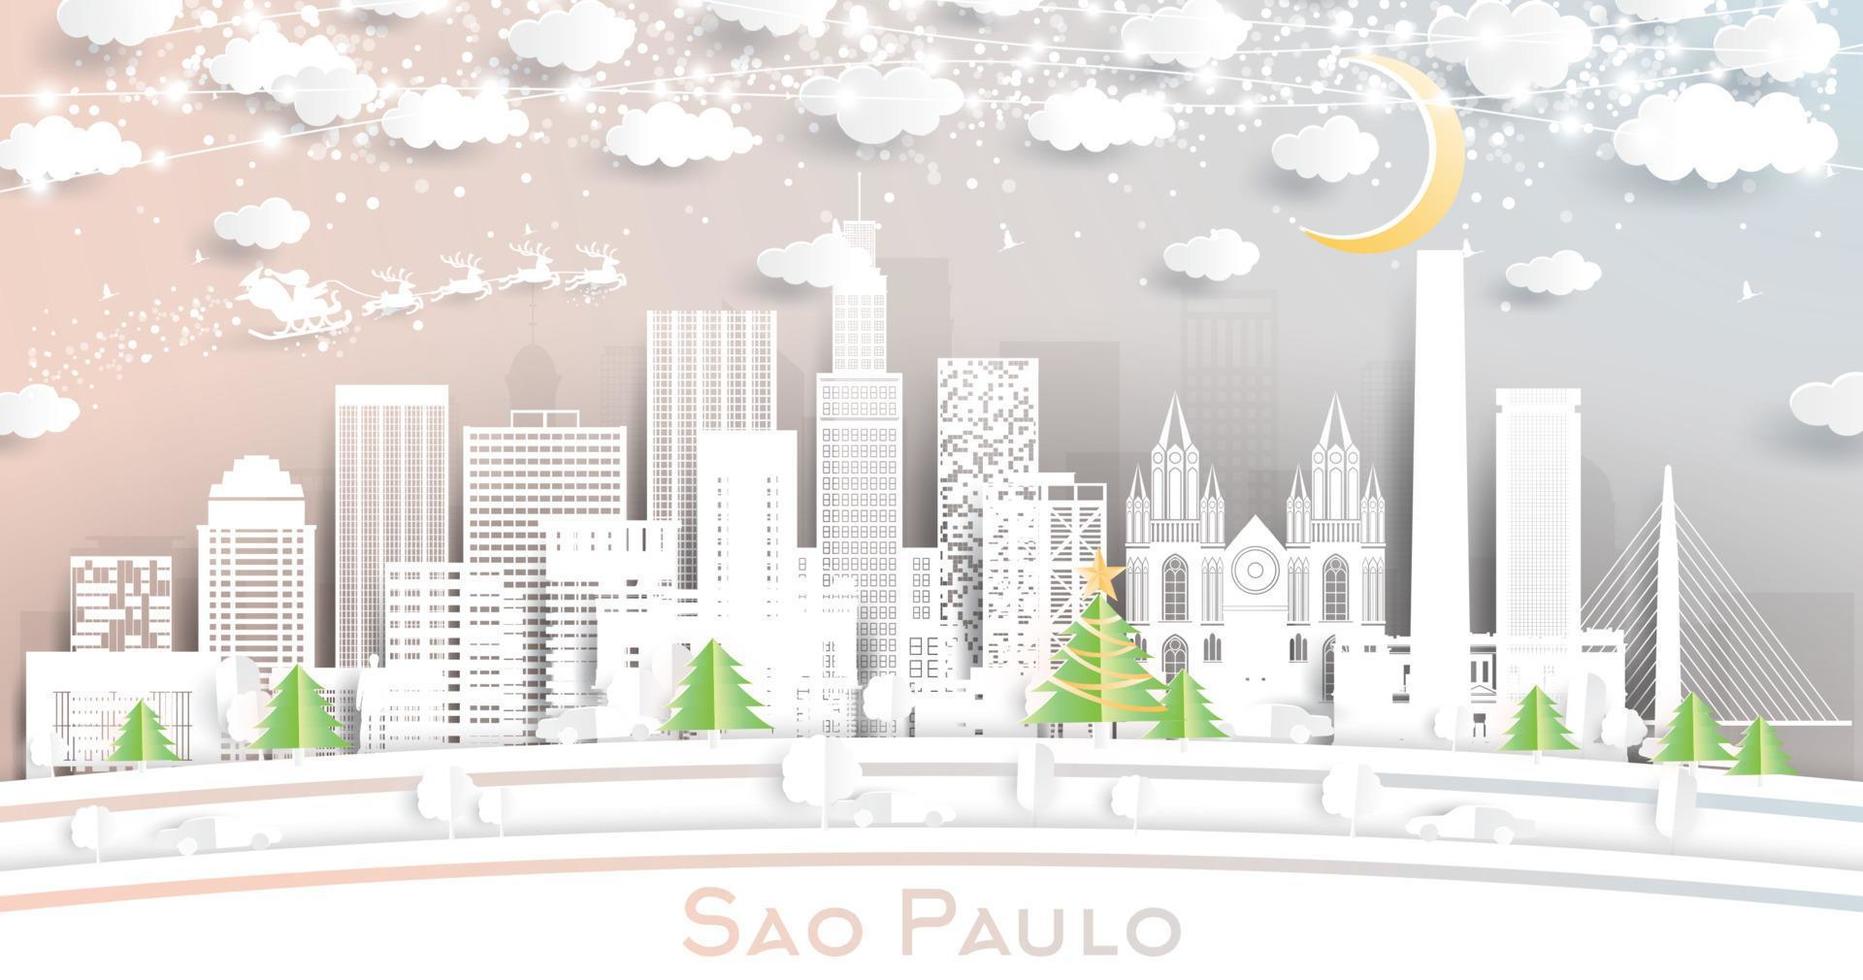 sao paulo Brasilien stad horisont i papper skära stil med snöflingor, måne och neon krans. vektor